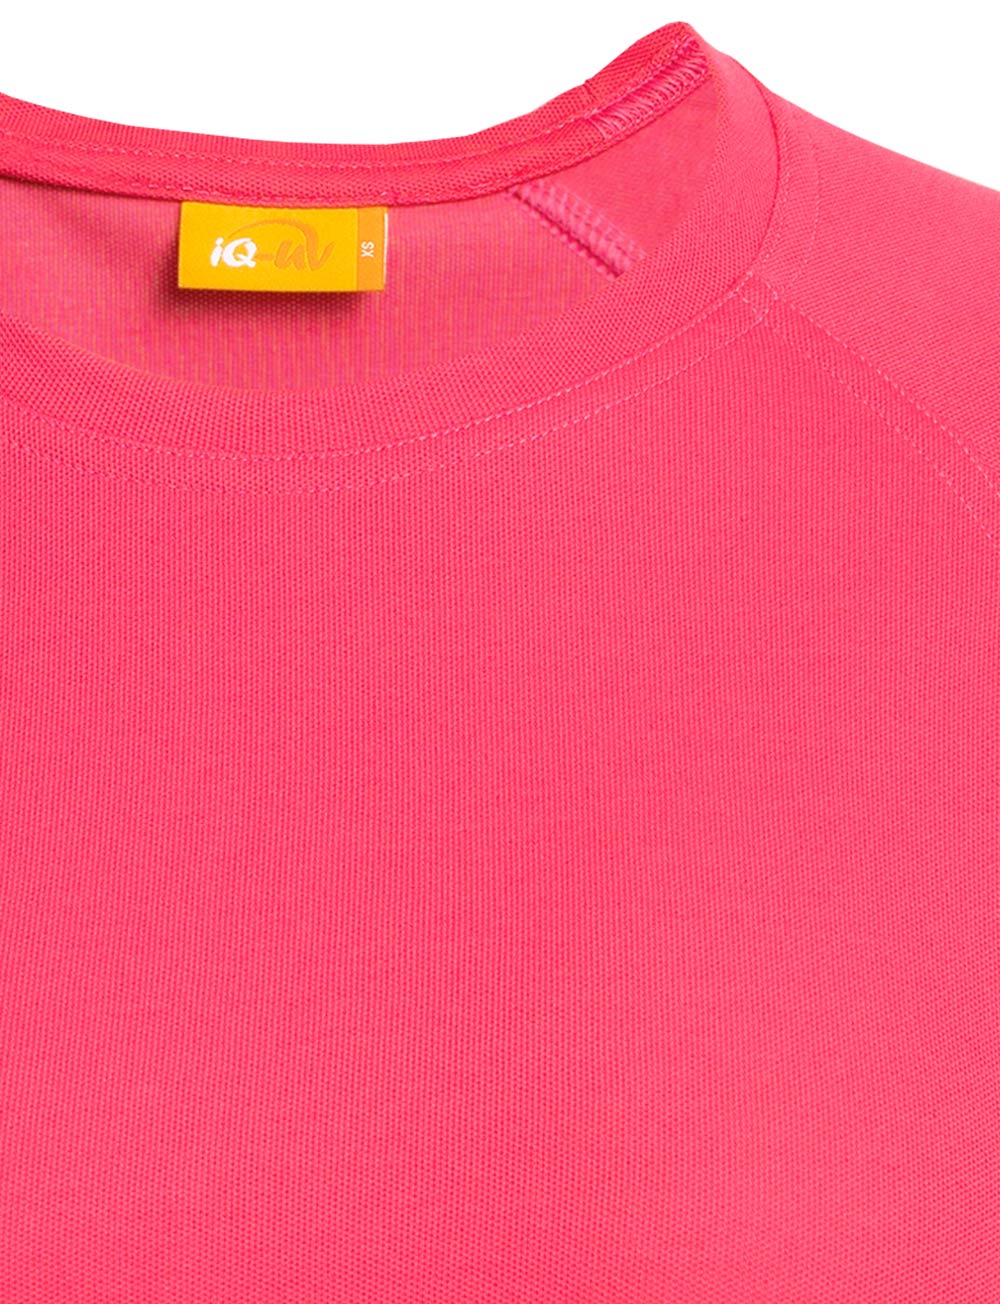 UV Schutz T-Shirt langarm recycelt Damen raspberry close up